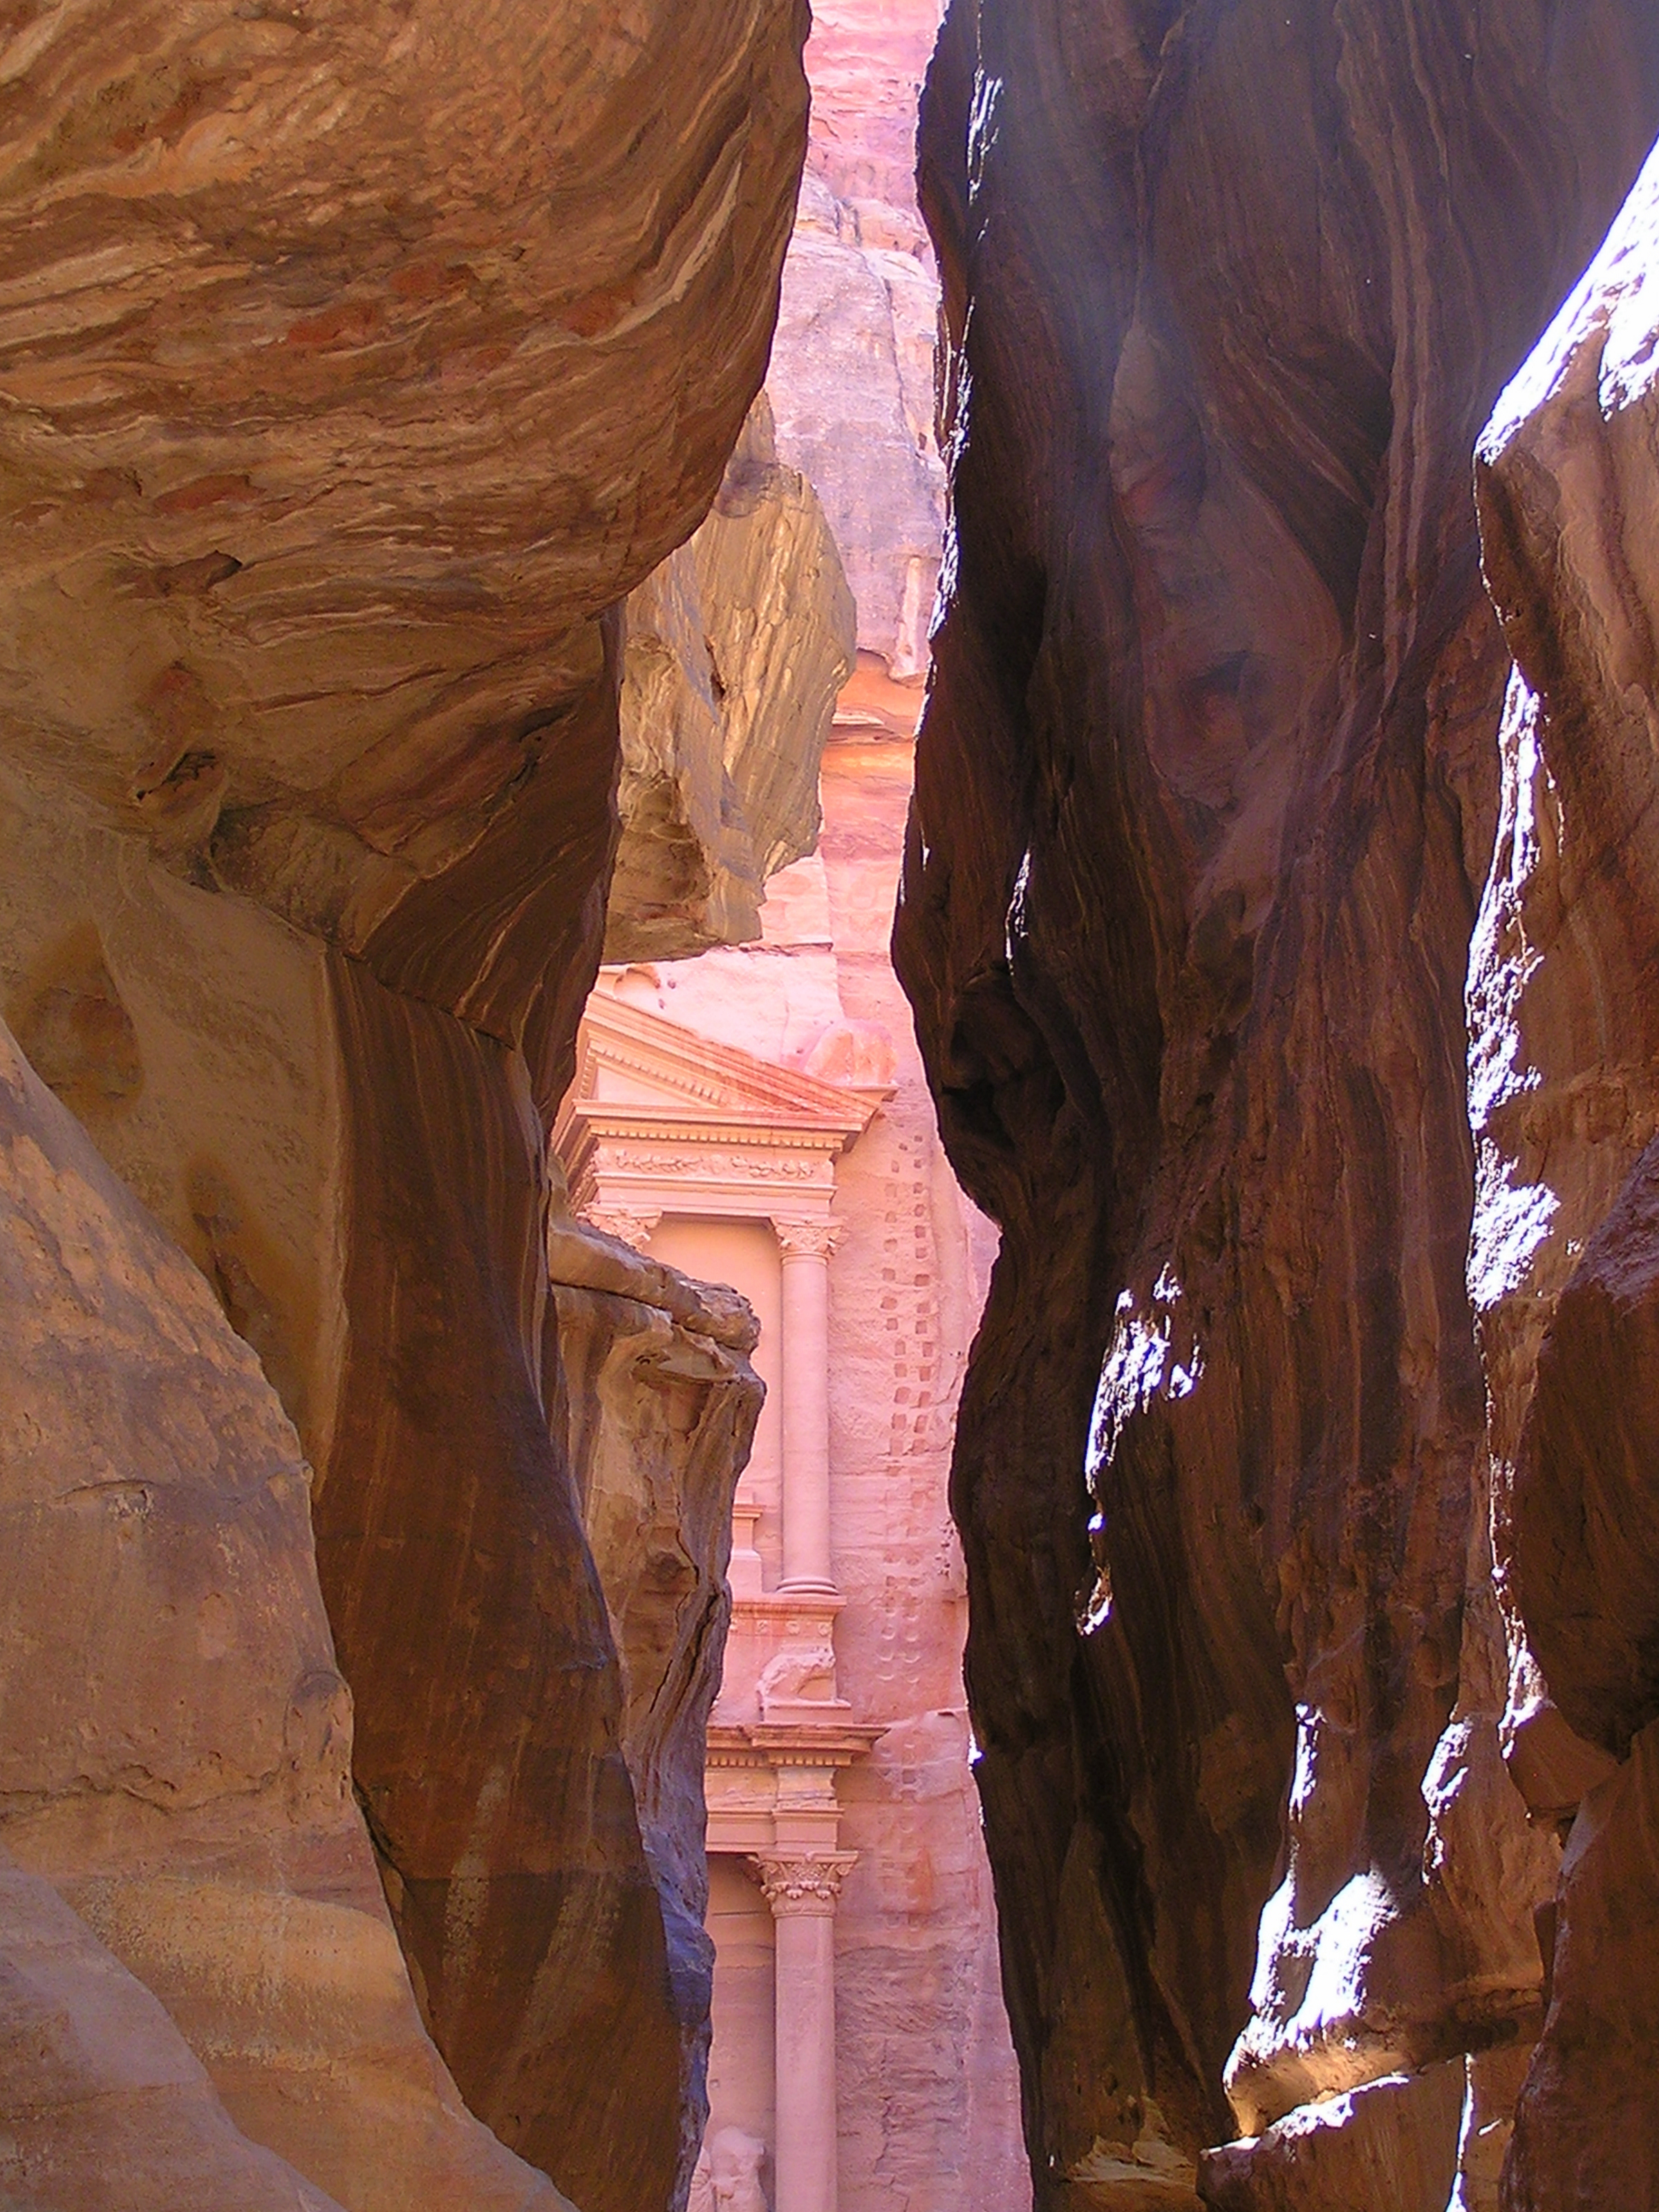 A glimpse of Petra